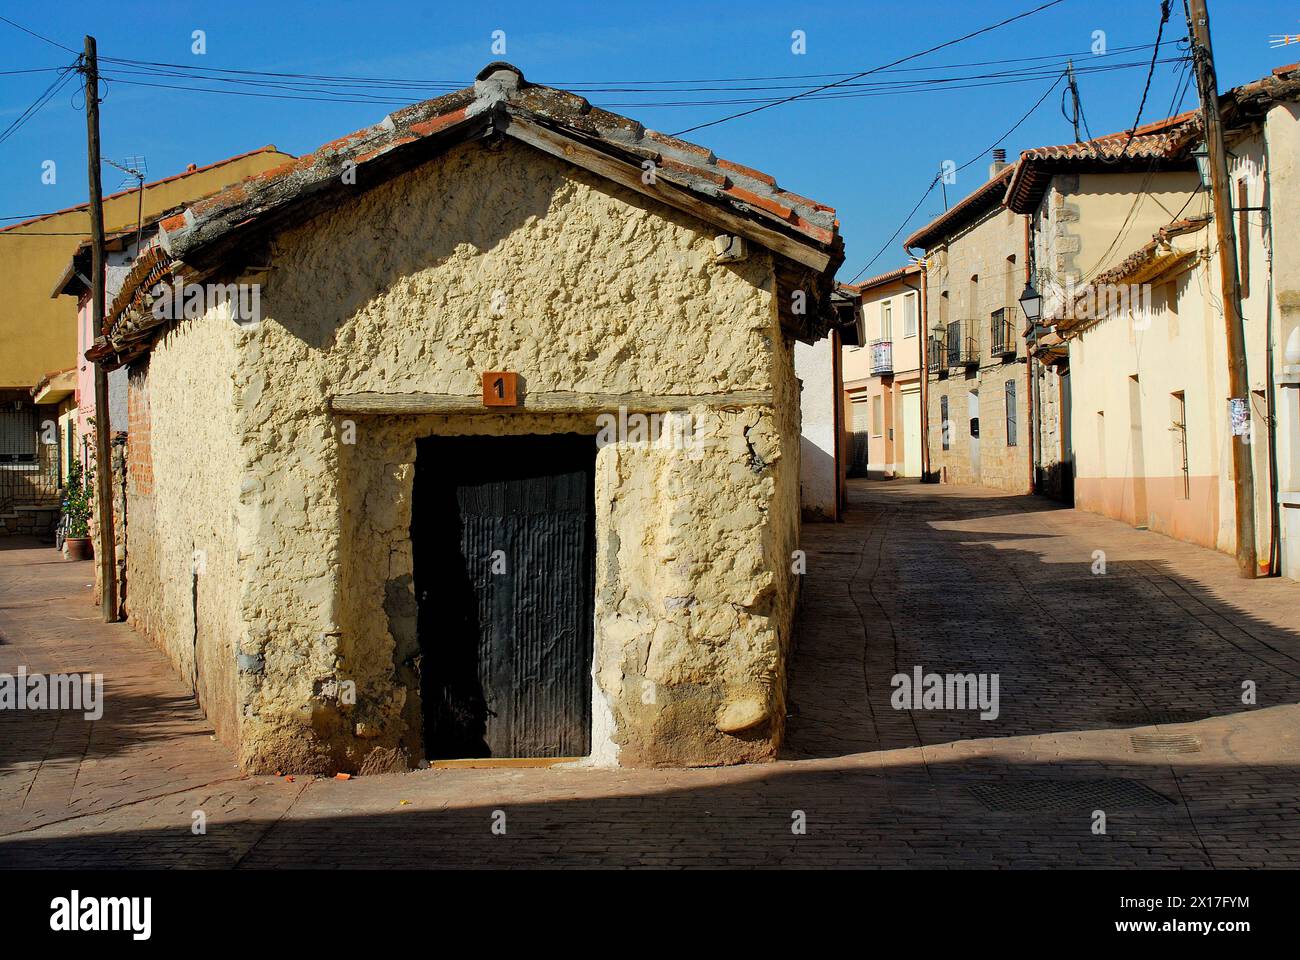 Rustic town of Torremocha del Jarama, Madrid, Spain Stock Photo